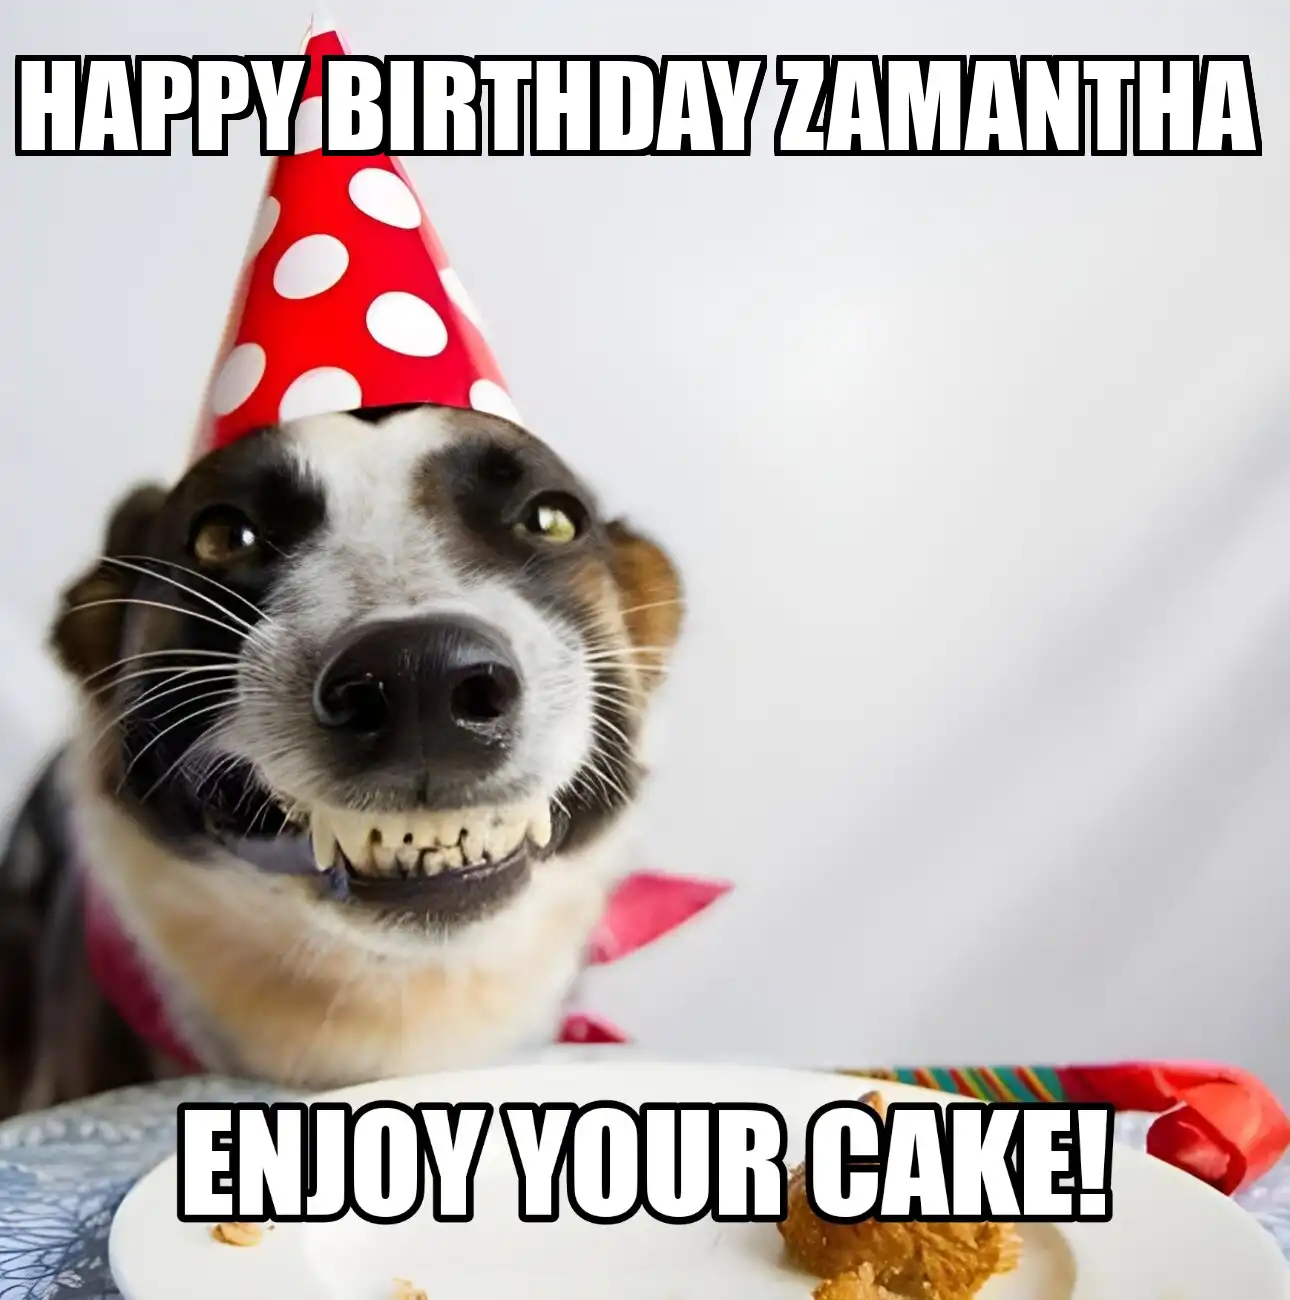 Happy Birthday Zamantha Enjoy Your Cake Dog Meme